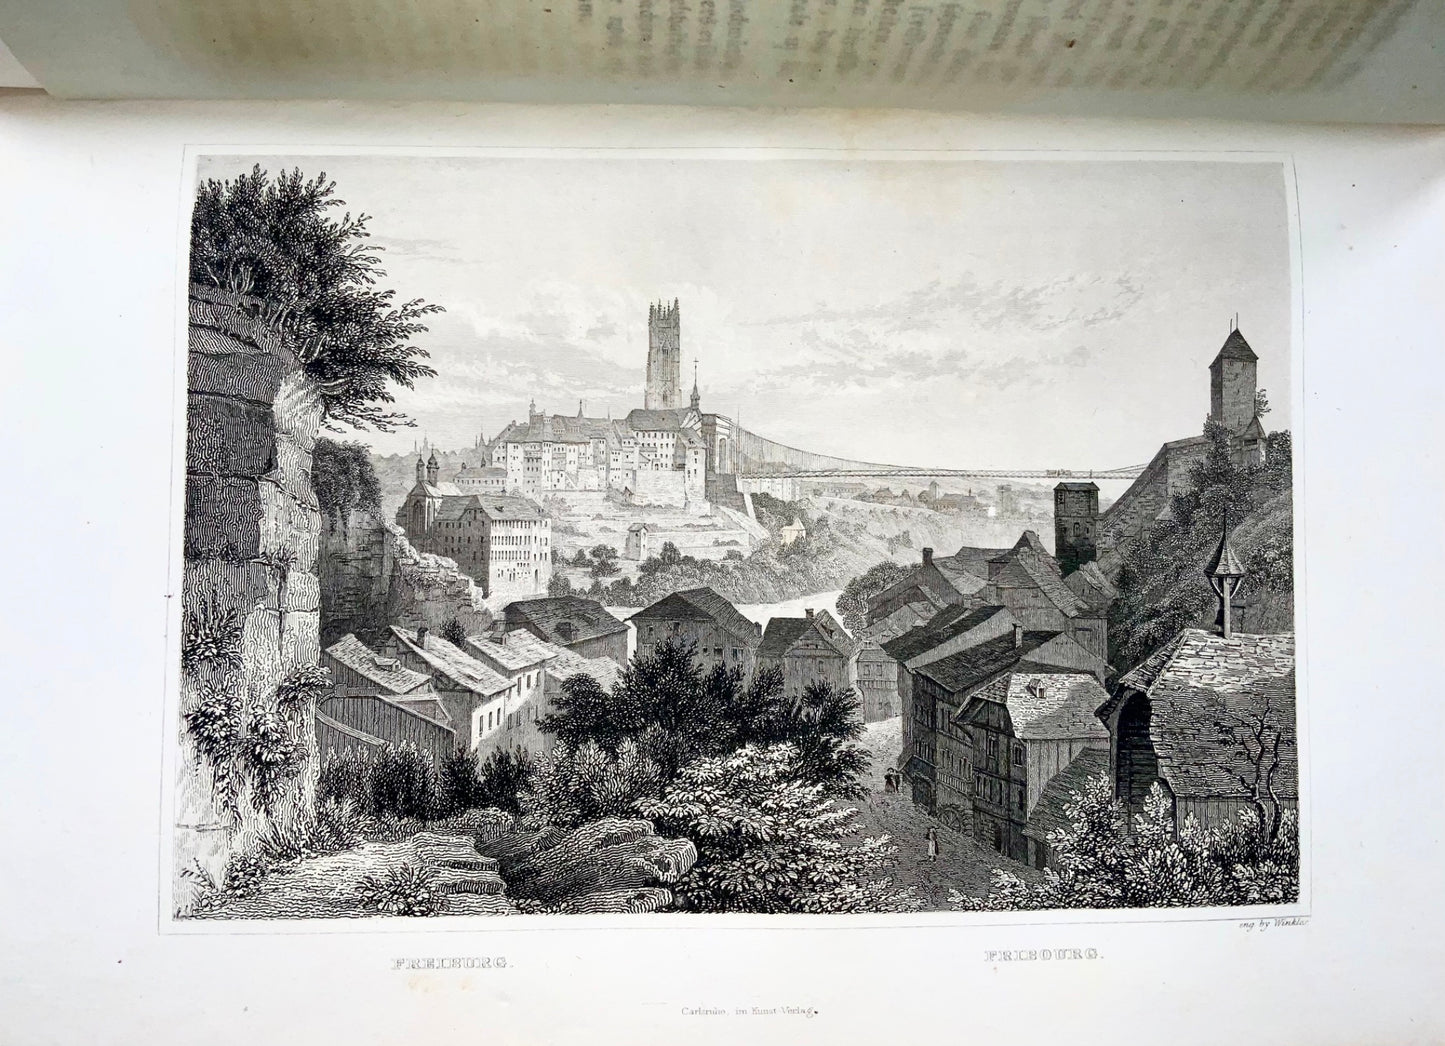 1836-8 H. Zschokke, Suisse en 85 gravures sur acier, in-4, 2 vols